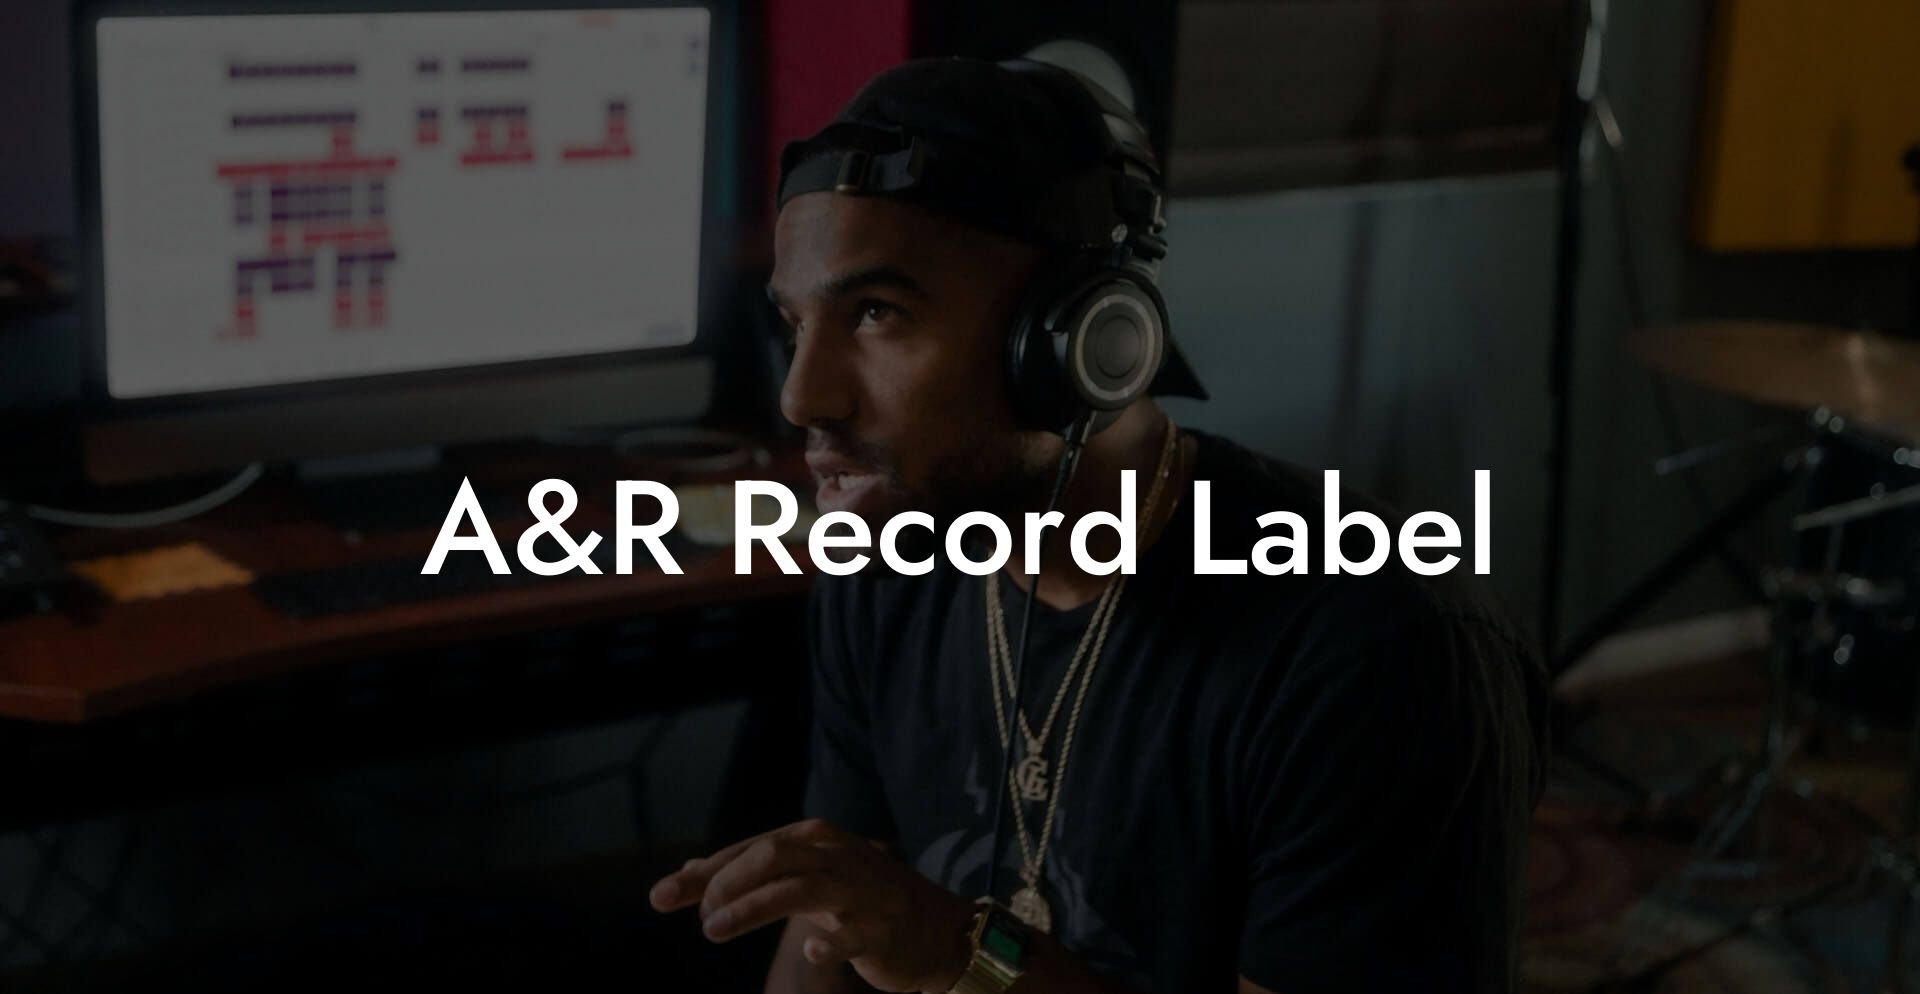 A&R Record Label